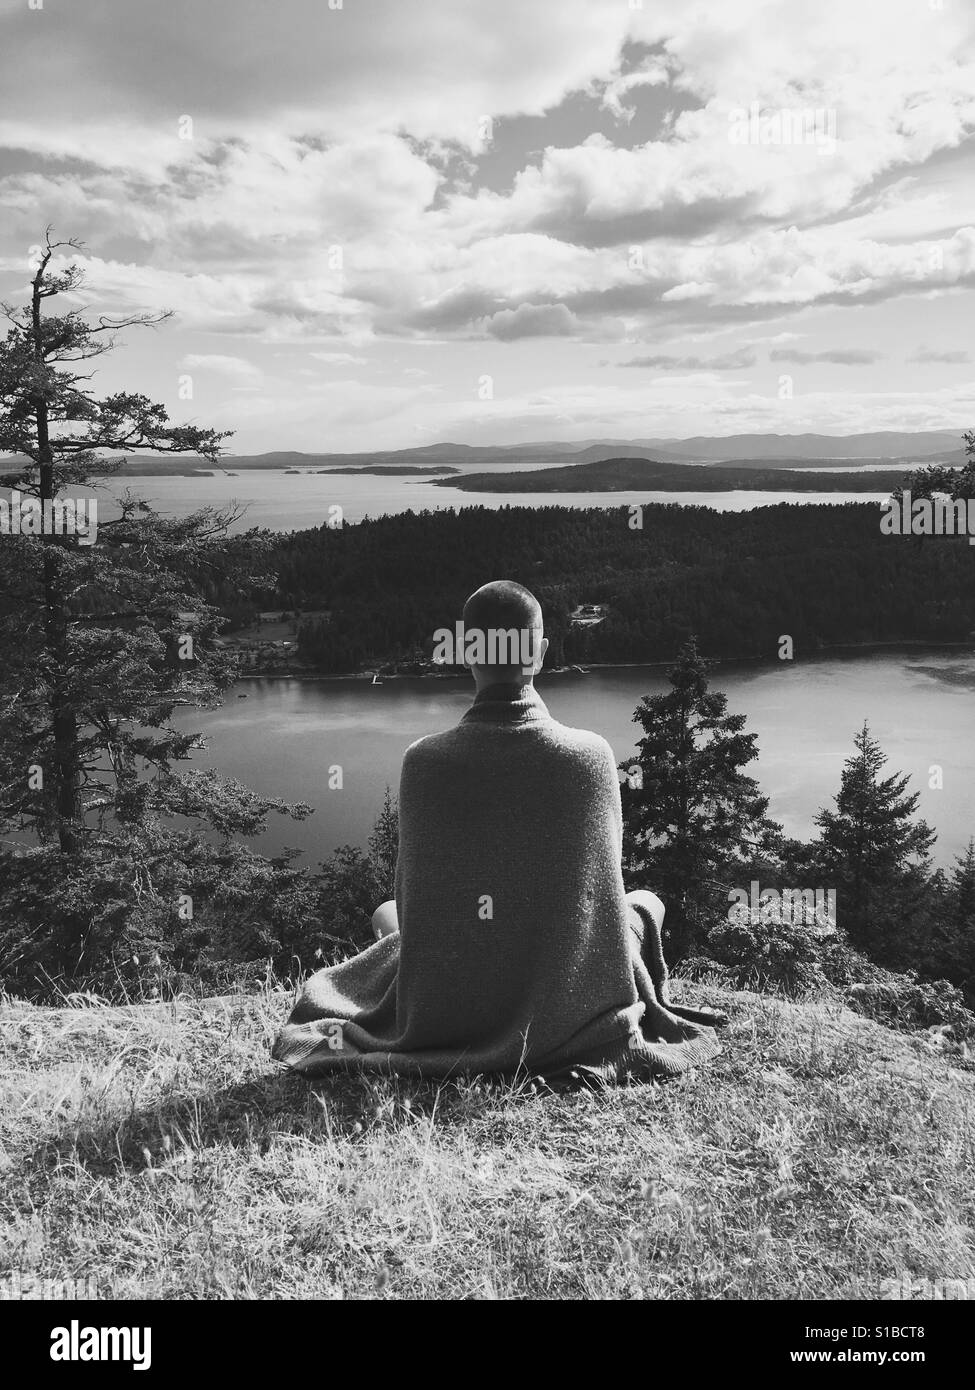 Schwarz / weiß Foto der Person in fließenden Kleidung mit rasierten Kopf meditieren auf einer Bergspitze, mit Blick auf den Golf Inseln Kanada Stockfoto